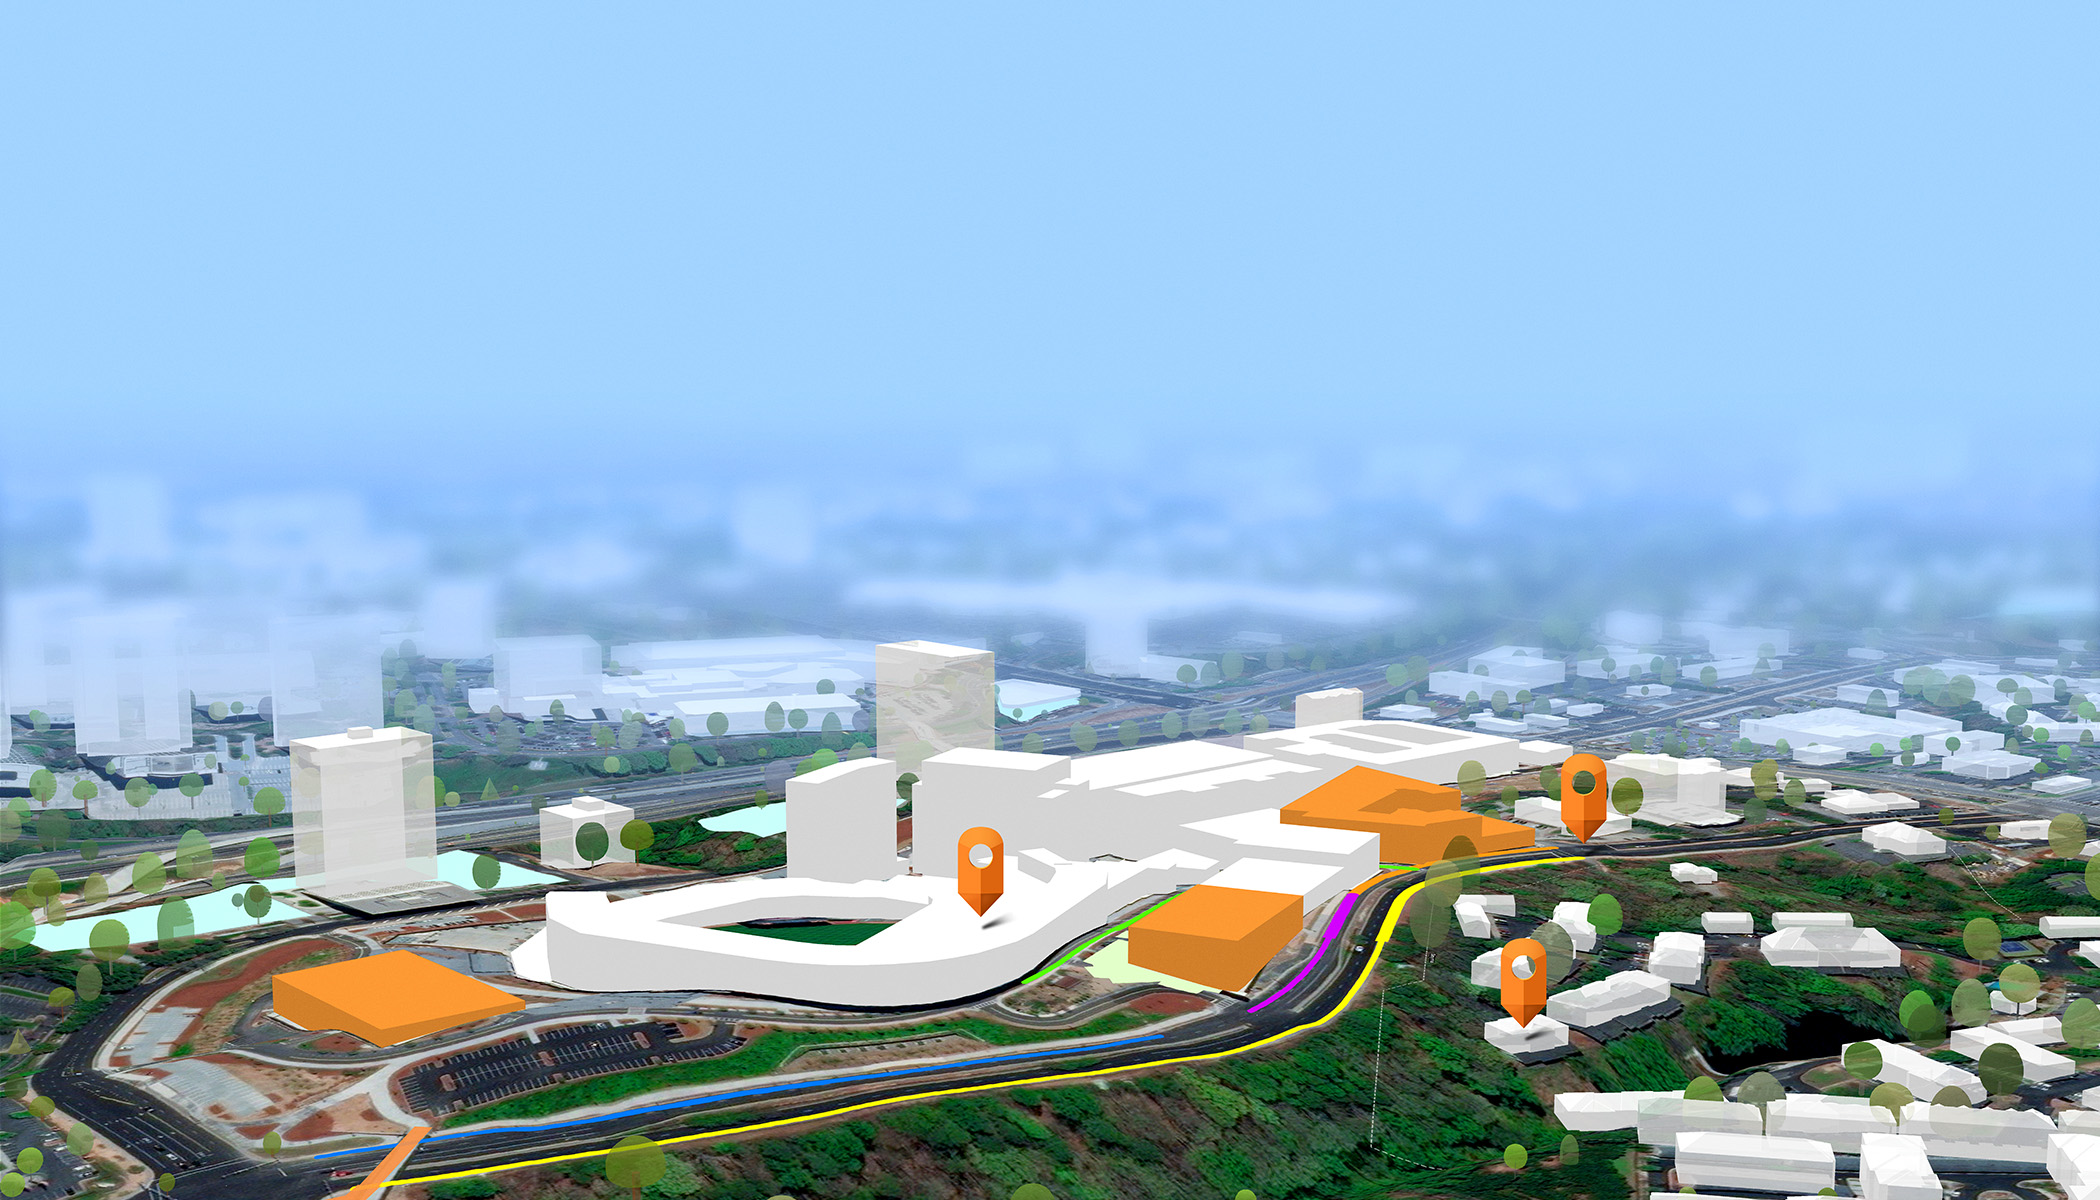 Stadtmodell in 3D, in dem der Hintergrund verwischt ist und sich im Vordergrund Gebäude in Orange und Weiß mit drei orangen Navigations-Pin-Symbolen befinden